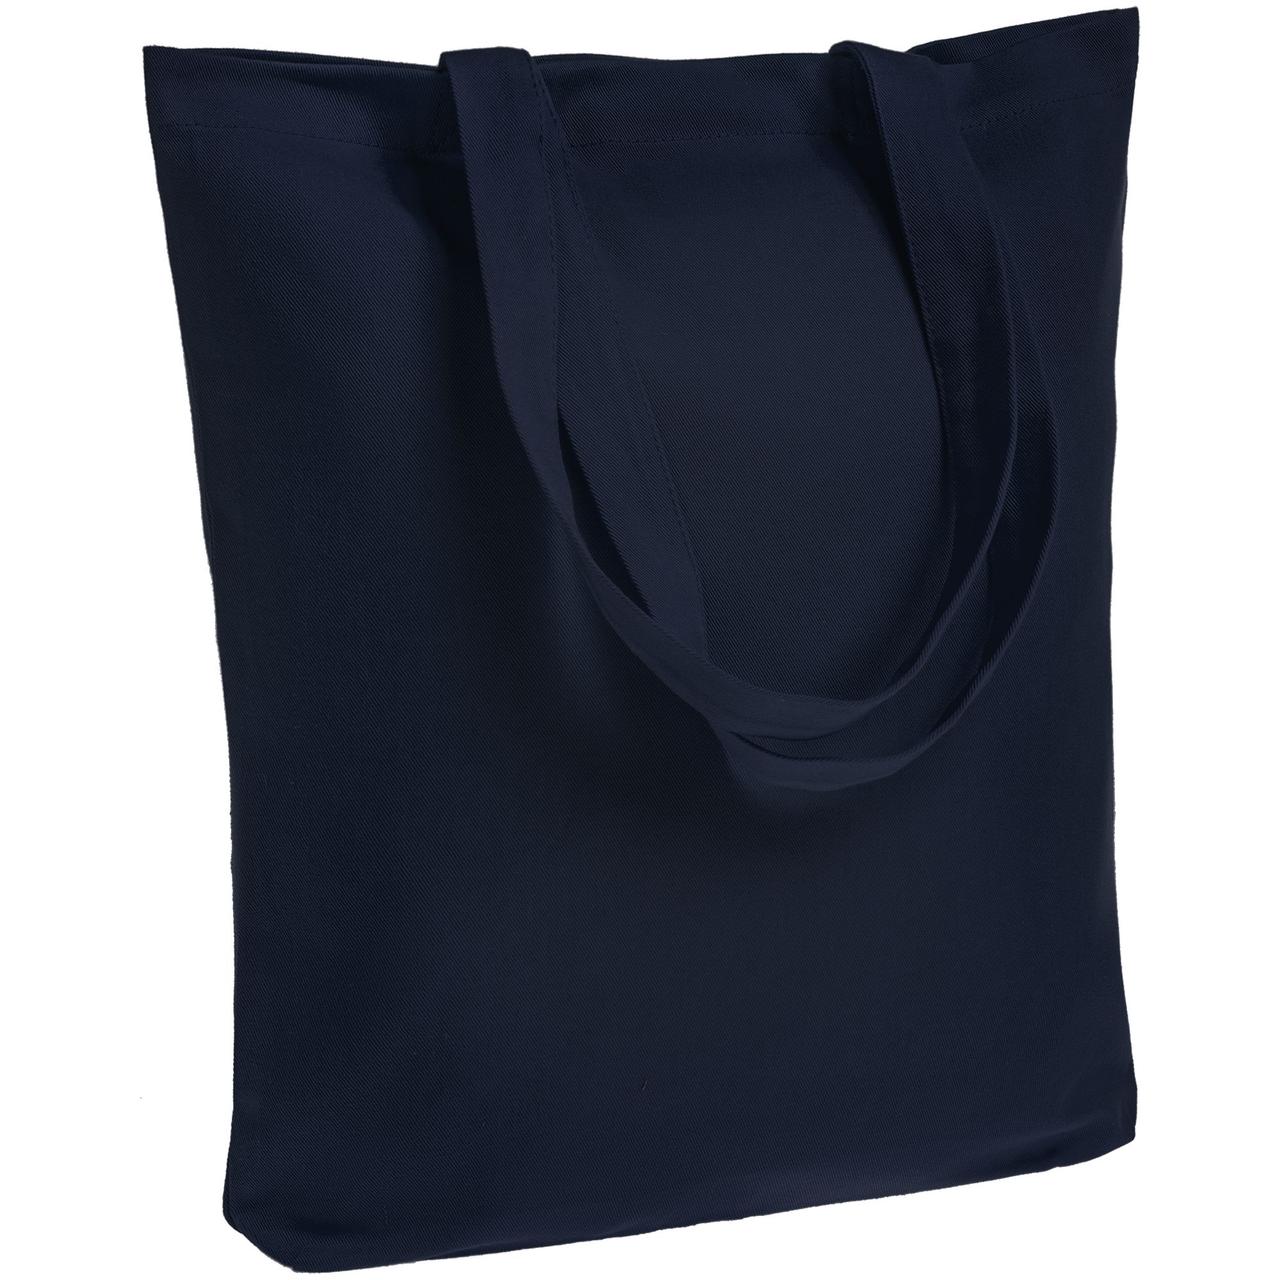 Холщовая сумка Avoska, темно-синяя (артикул 11293.40)